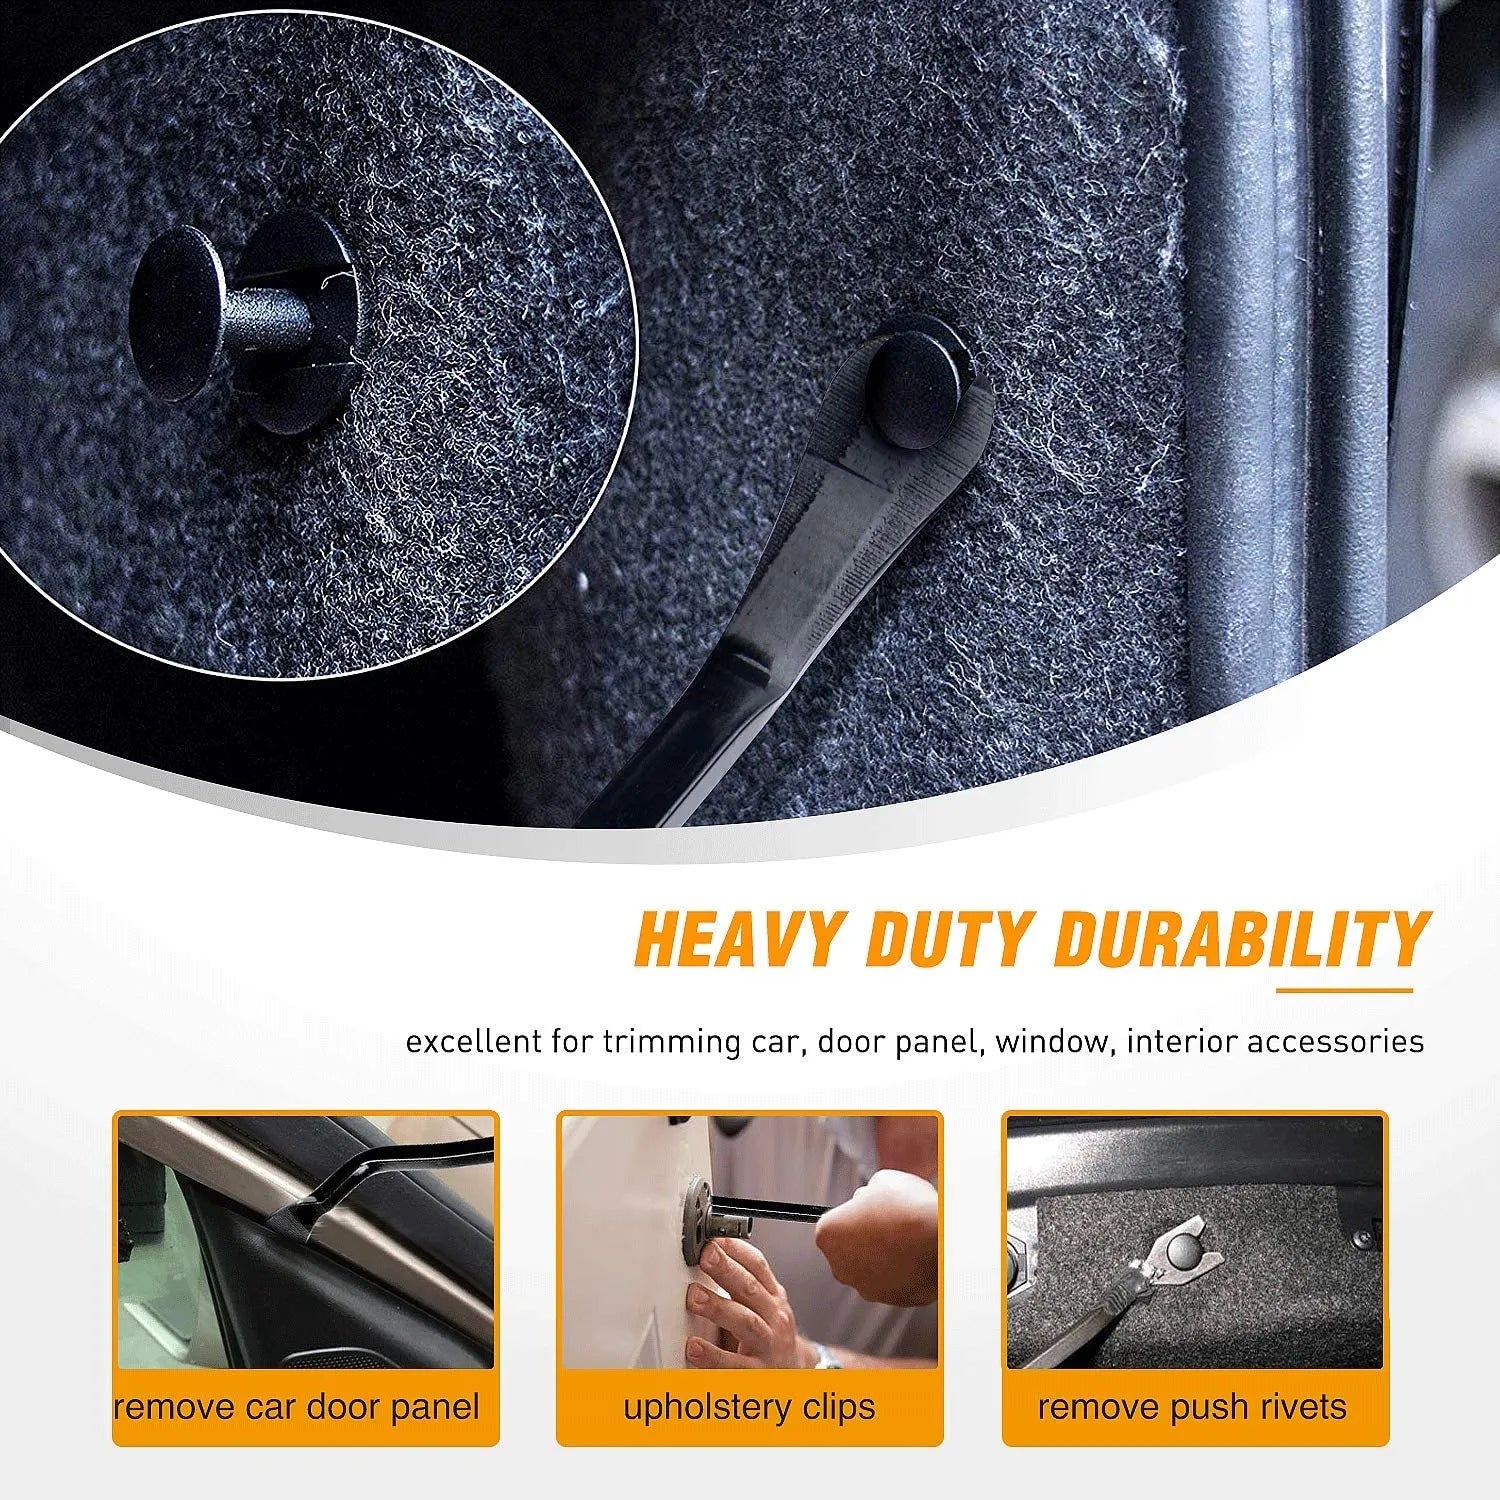 Auto repair essentials: clip pliers